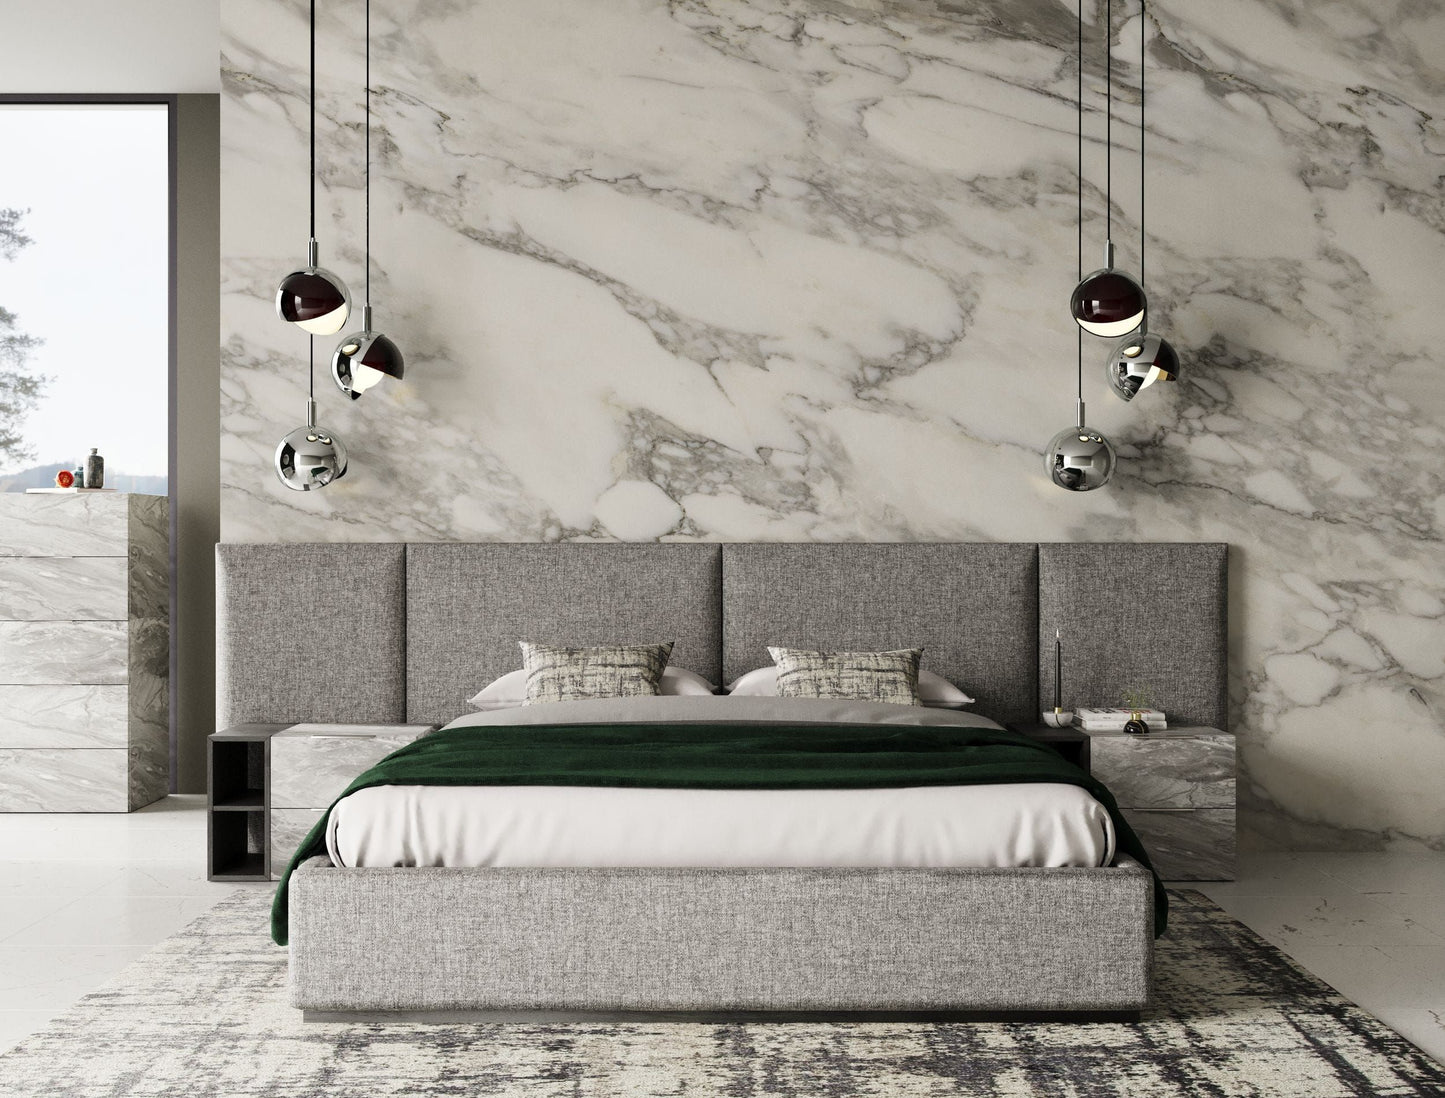 Nova Domus Maranello - Modern Grey Bed Set